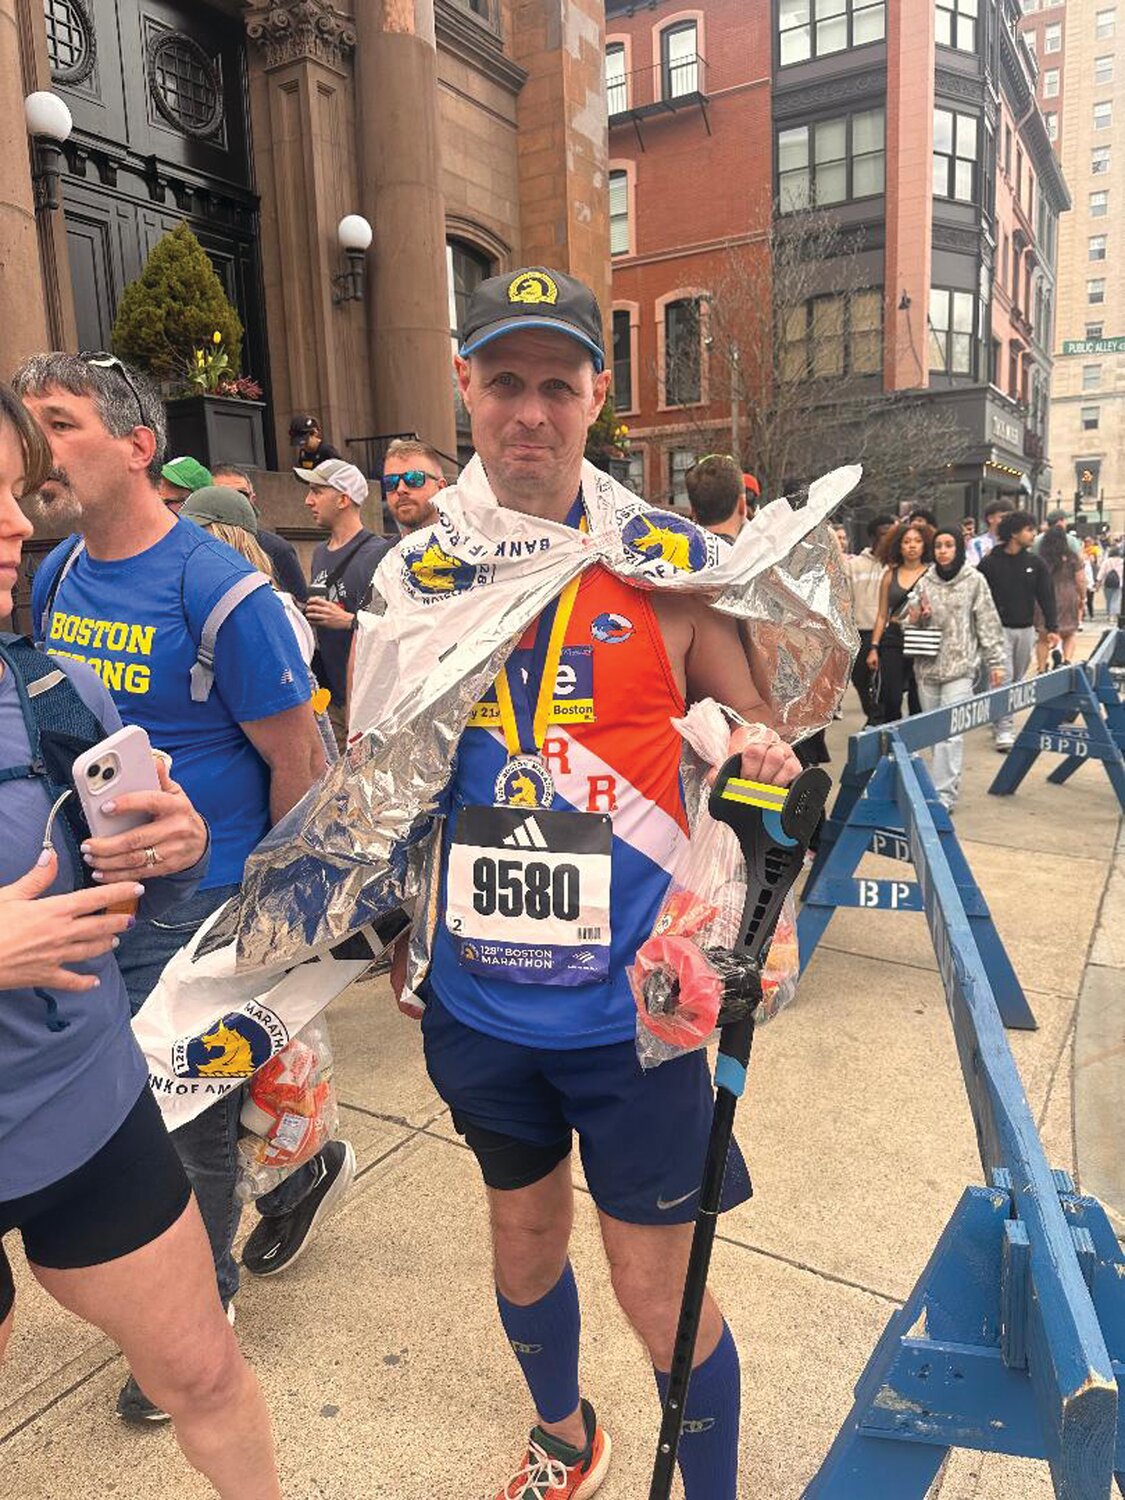 Peter Lederer extended his streak to 21 straight Boston Marathons.